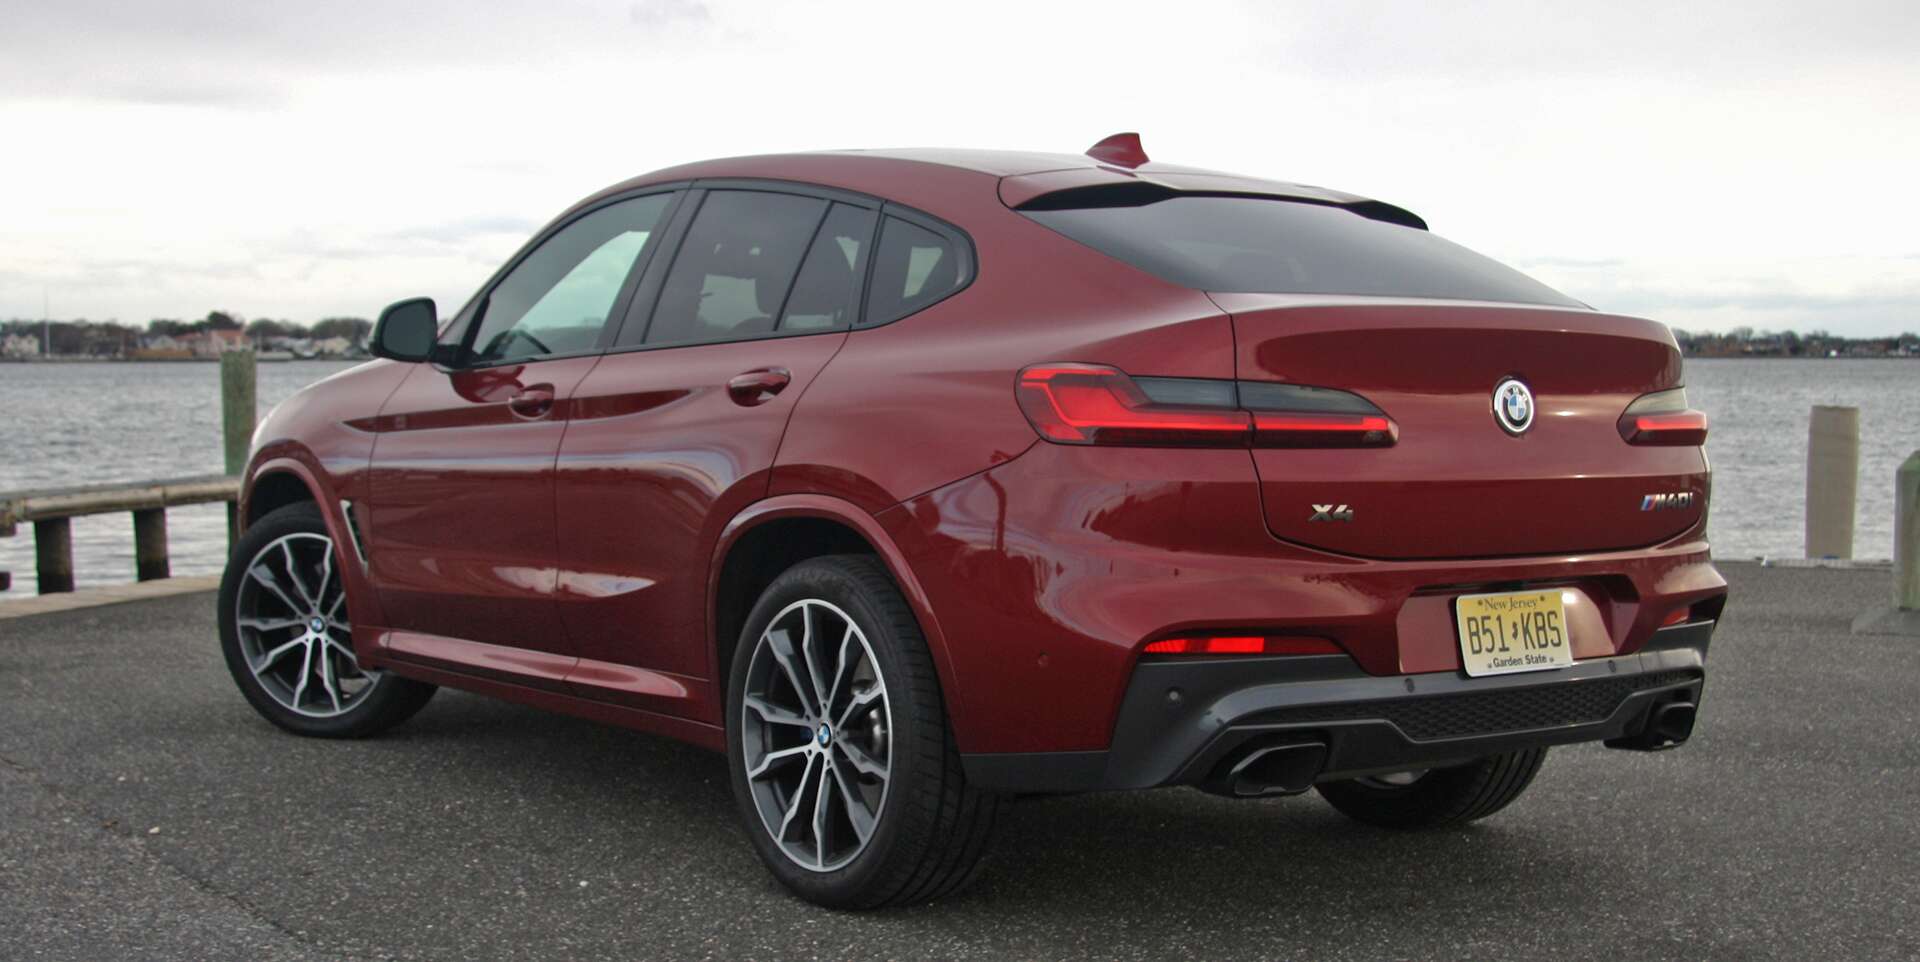 2019 BMW X4 M40i New Dad Review: One Sleek, Speedy, and Slightly